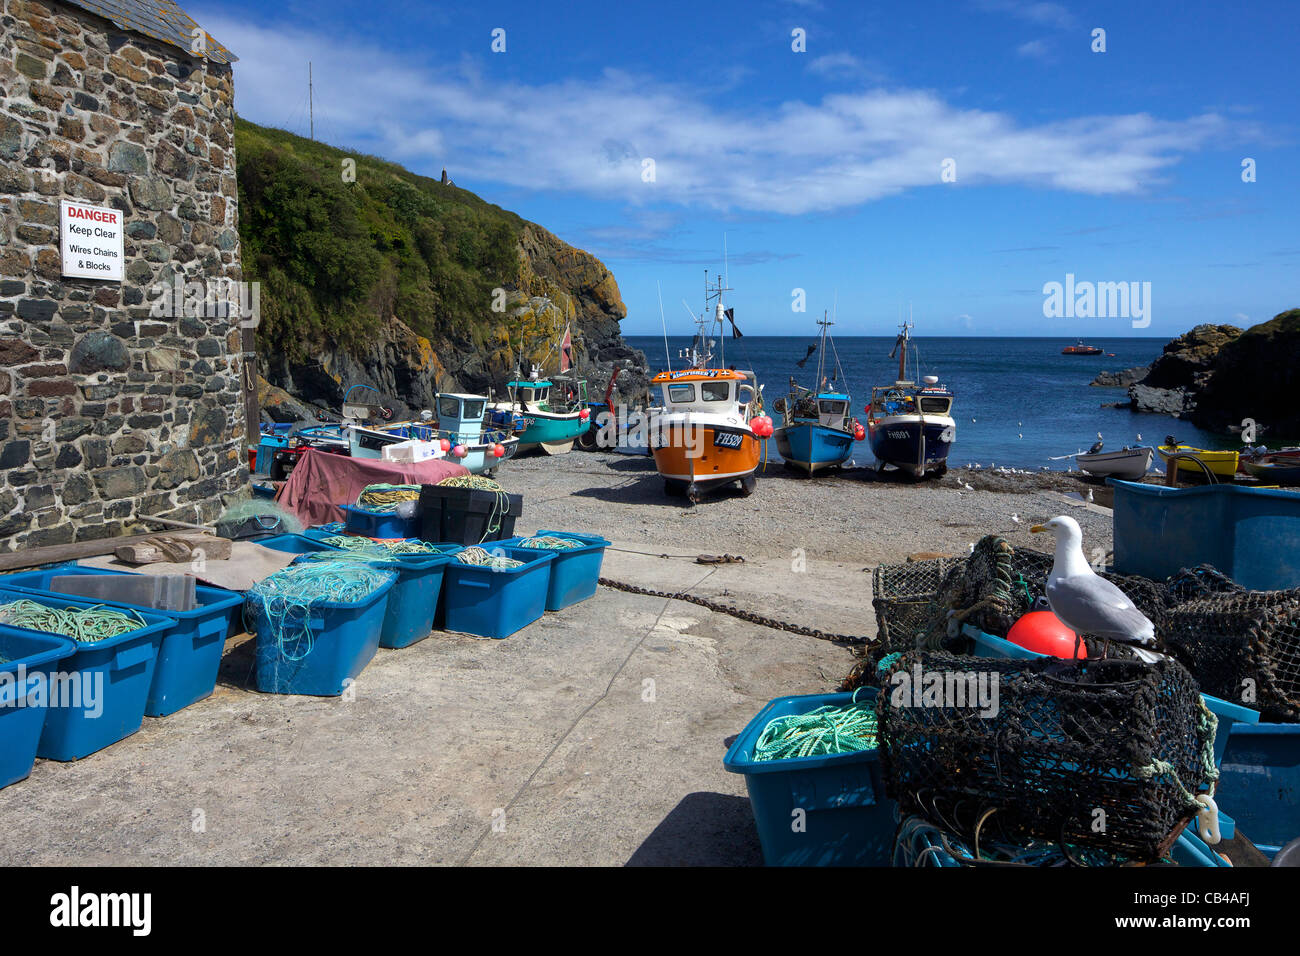 Angelboote/Fischerboote am Strand von Cadgwith, Halbinsel Lizard, Cornwall, Südwestengland, UK, Vereinigtes Königreich, GB, Großbritannien, Stockfoto